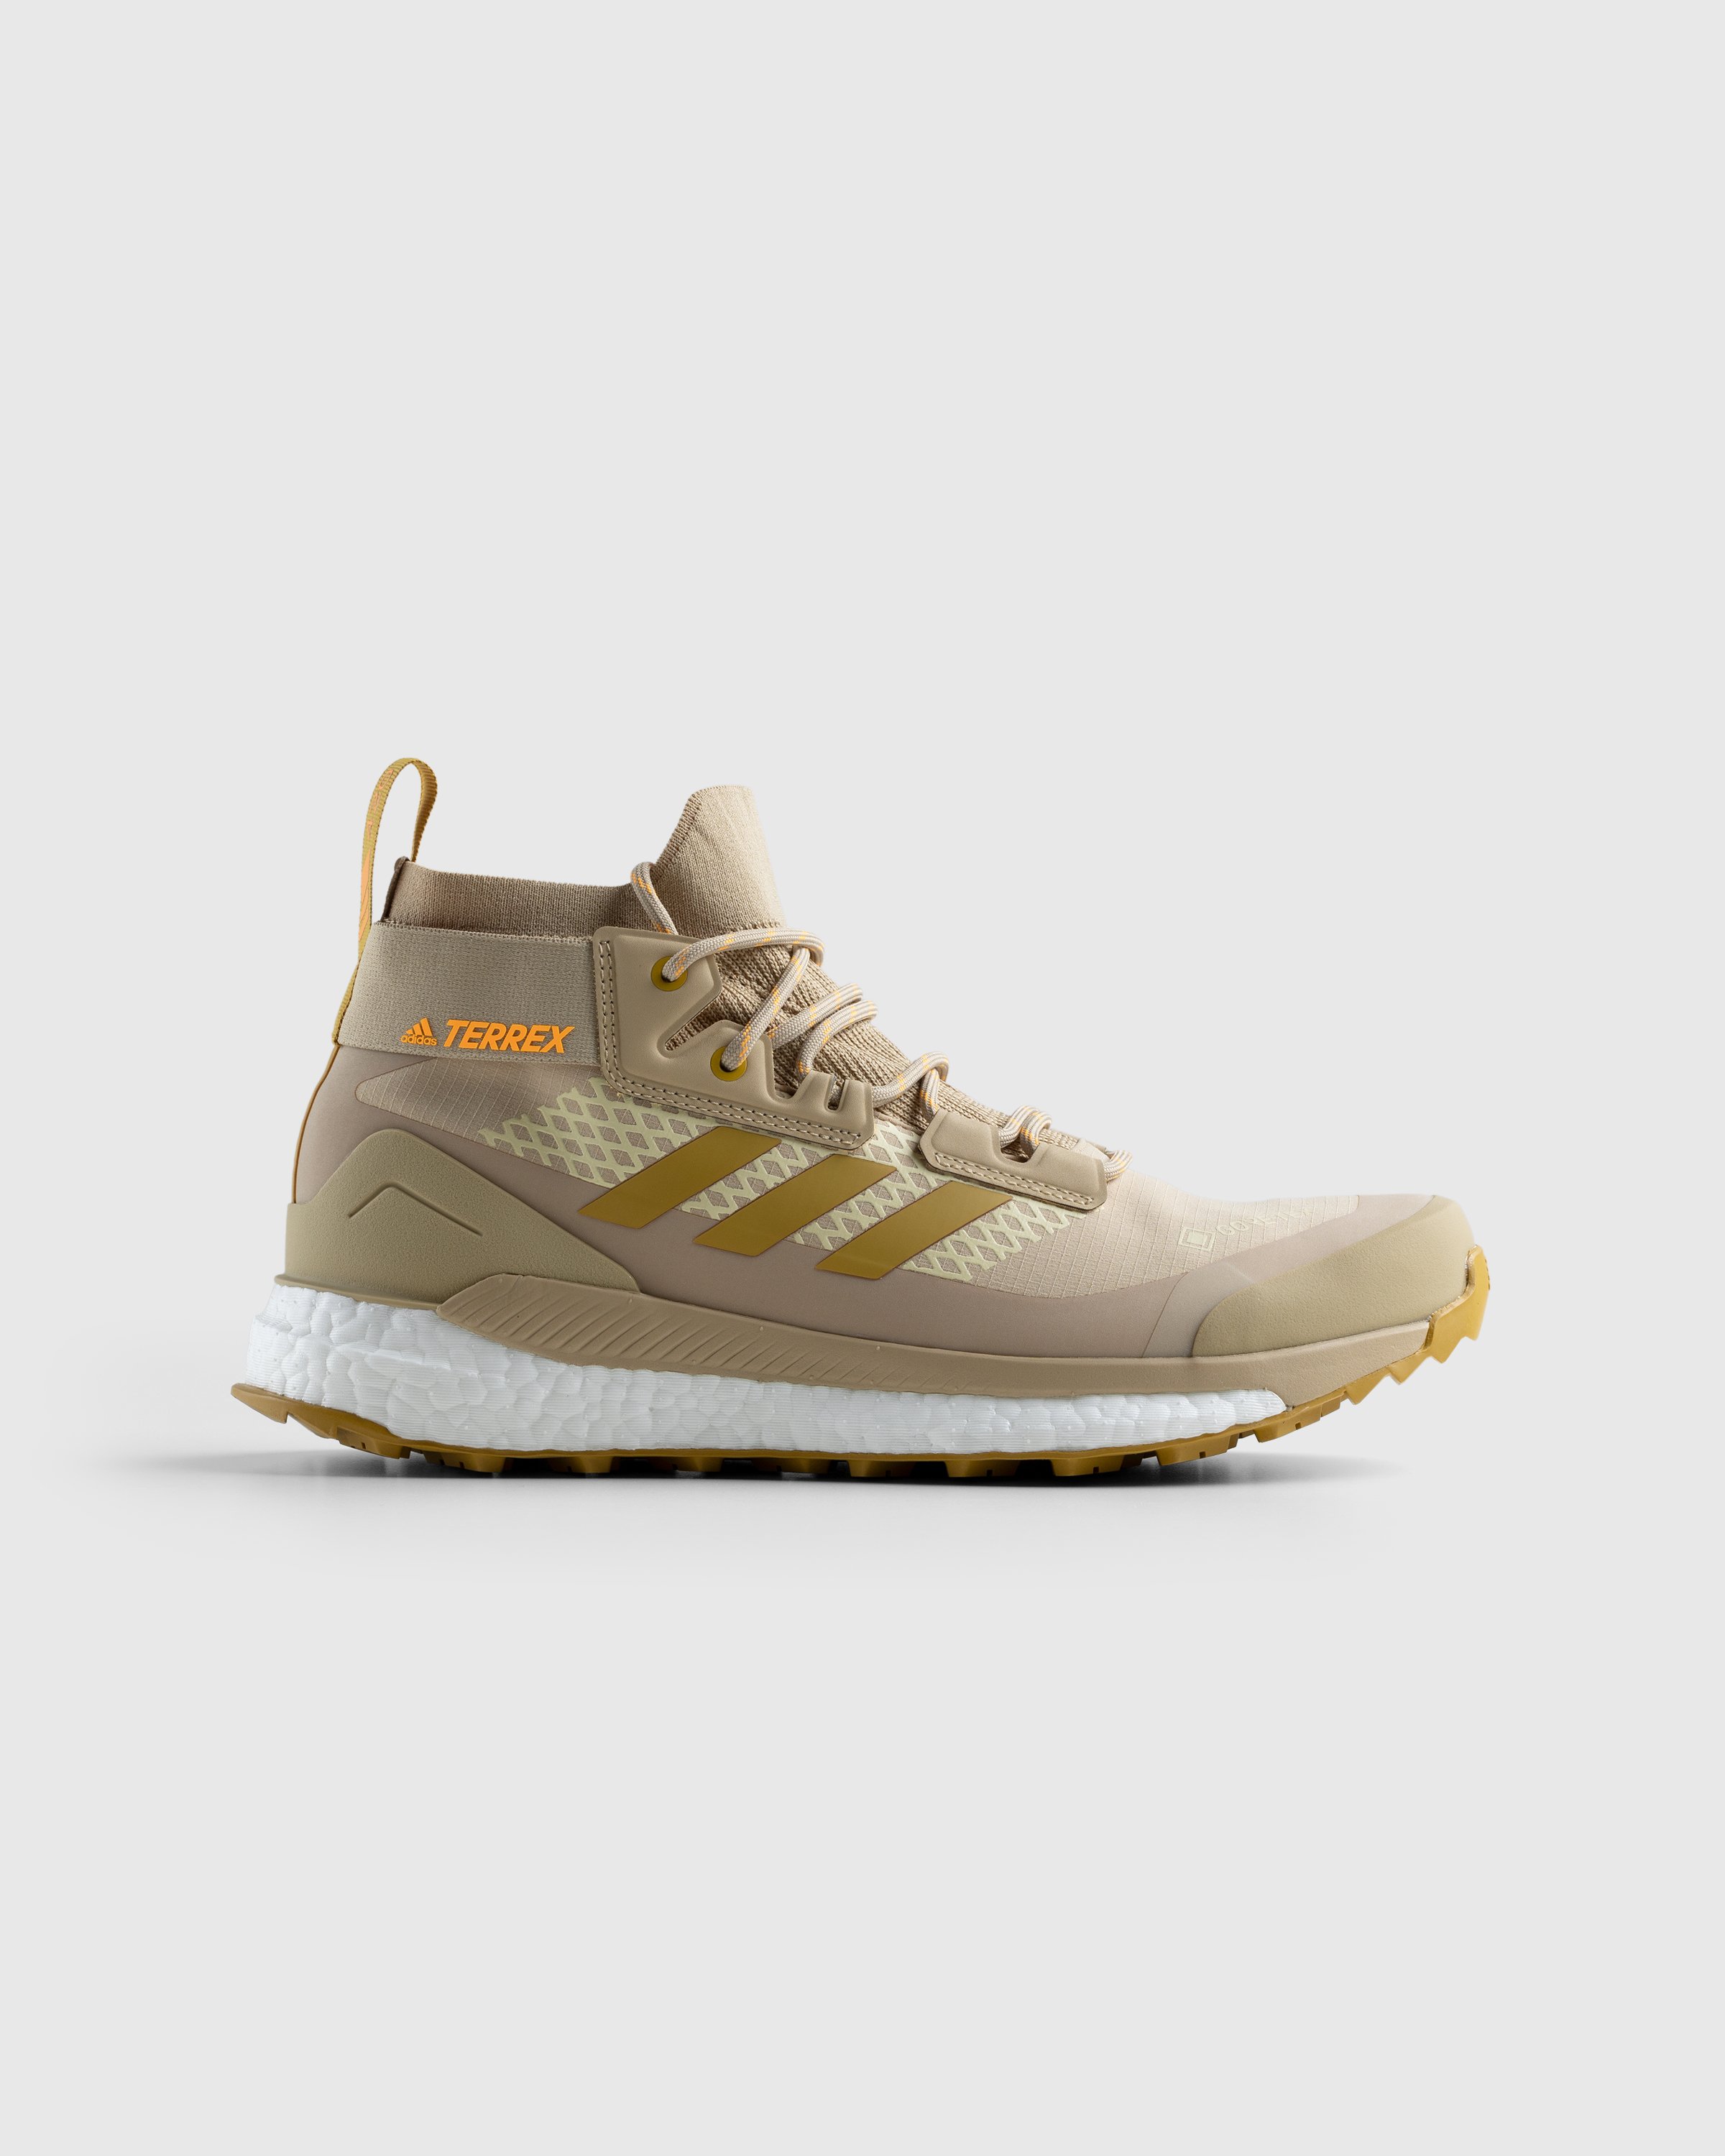 Adidas - Terrex Free Hiker Gore-Tex Beige/Gold - Footwear - Brown - Image 1